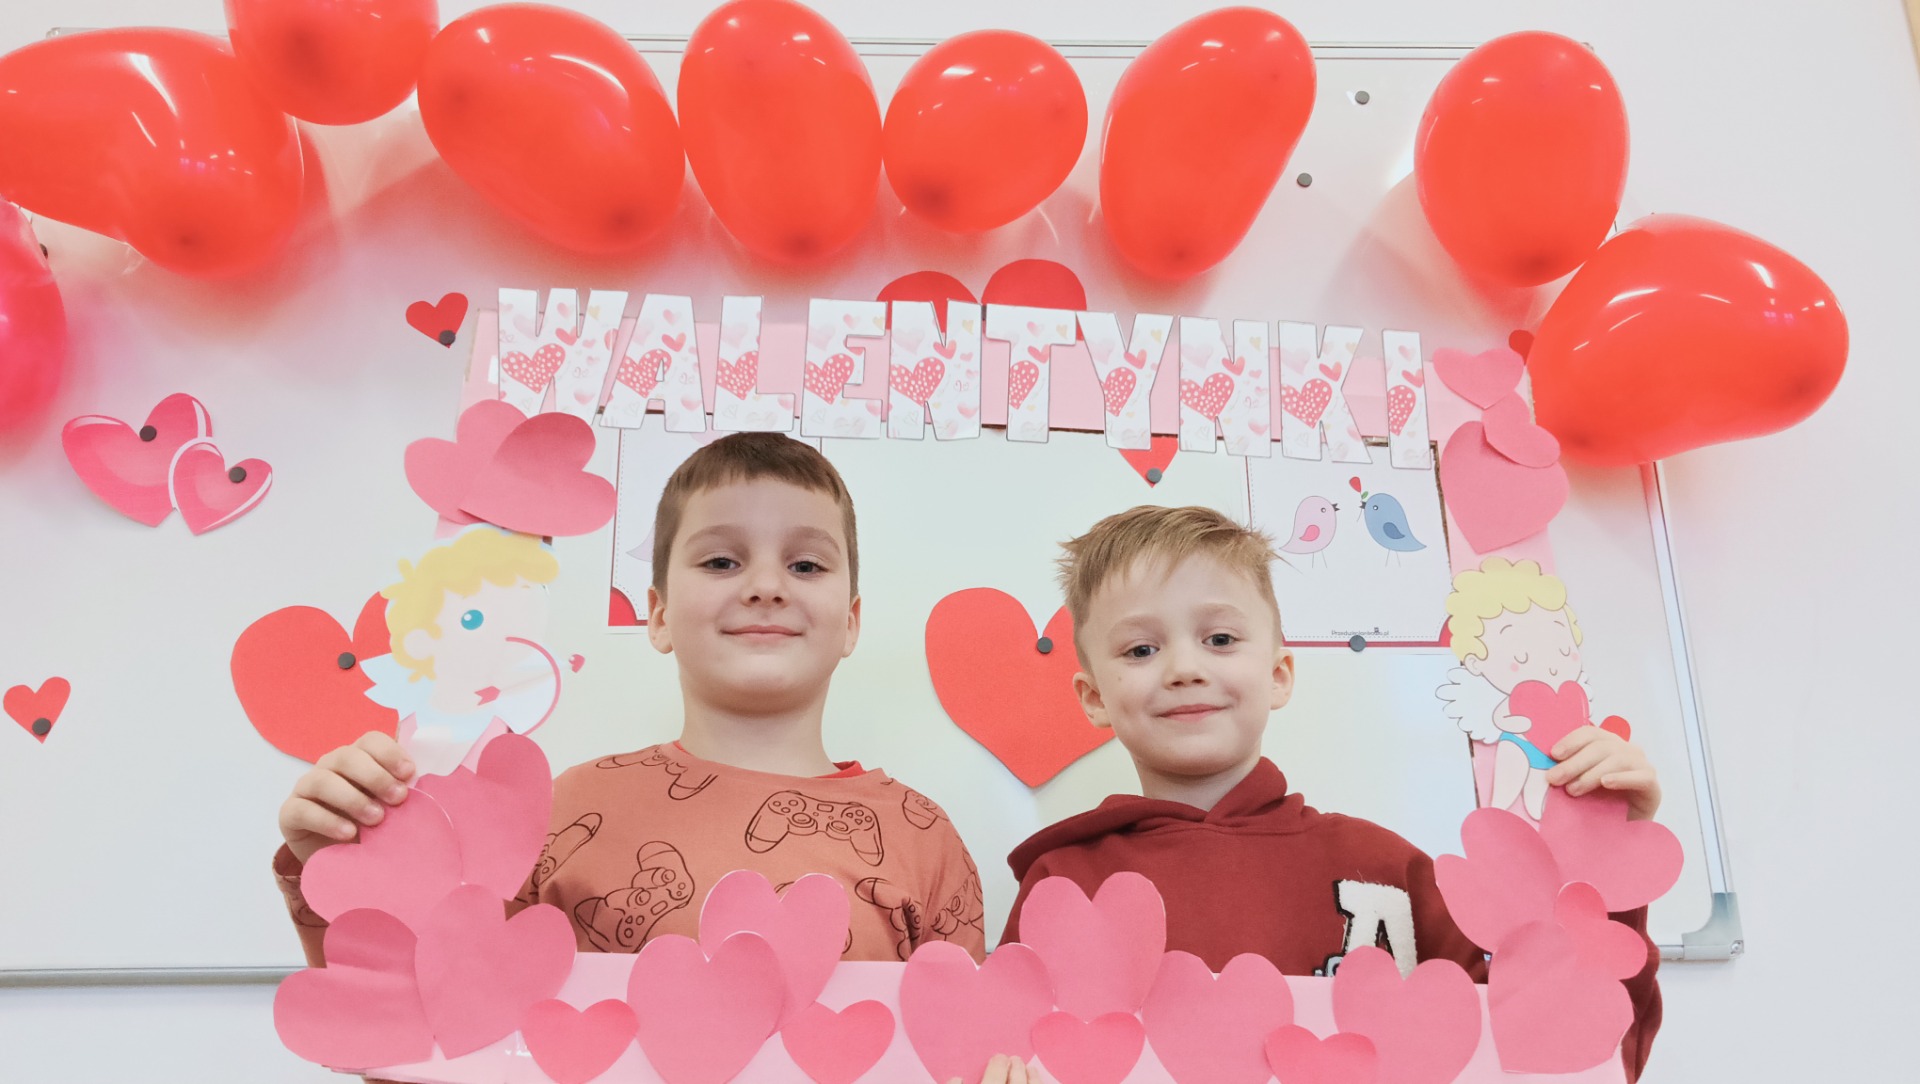 Przedszkolaki oddziału Oc Szkoły Podstawowej Nr 2 im. M. Kopernika w Olecku podczas świętowania "Walentynek"